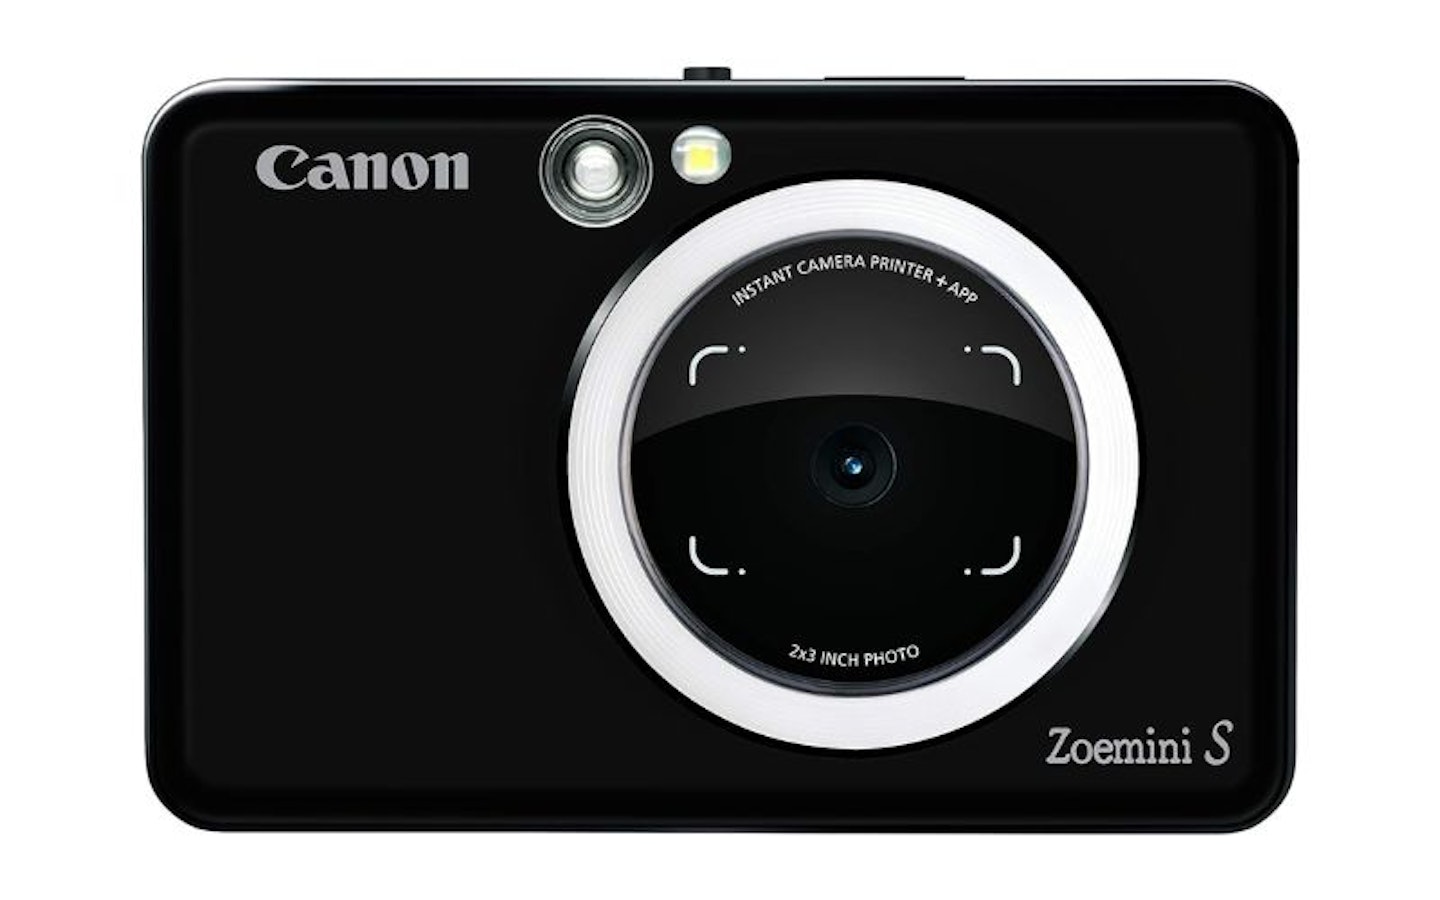 Canon Zoemini S Instant Camera and Photo Printer